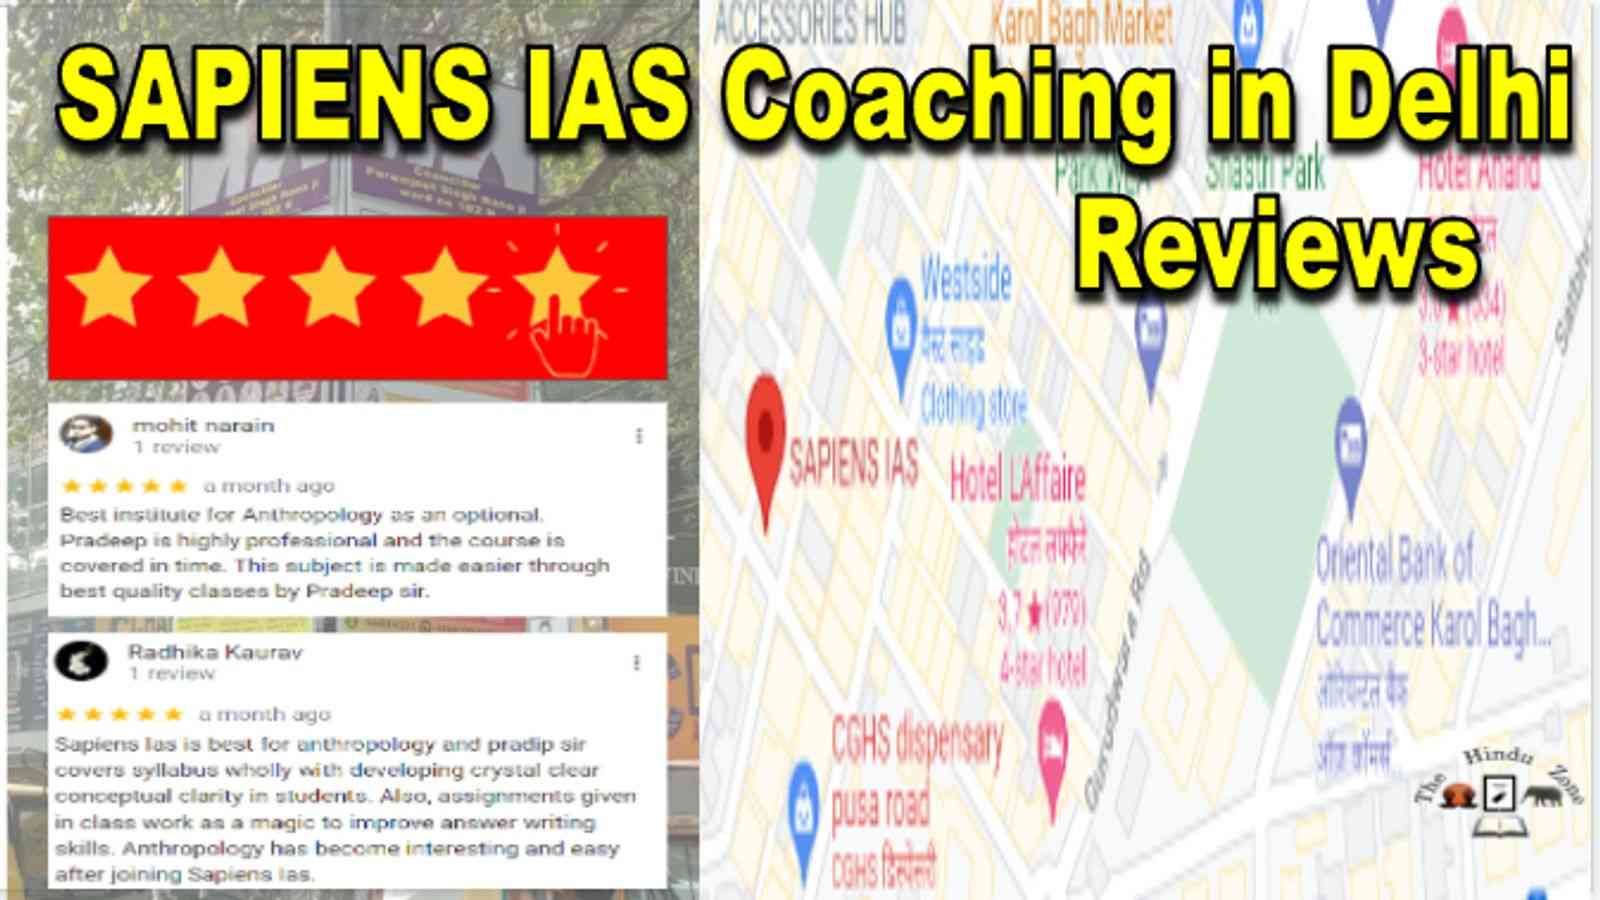 Sapiens IAS Coaching in Delhi Reviews